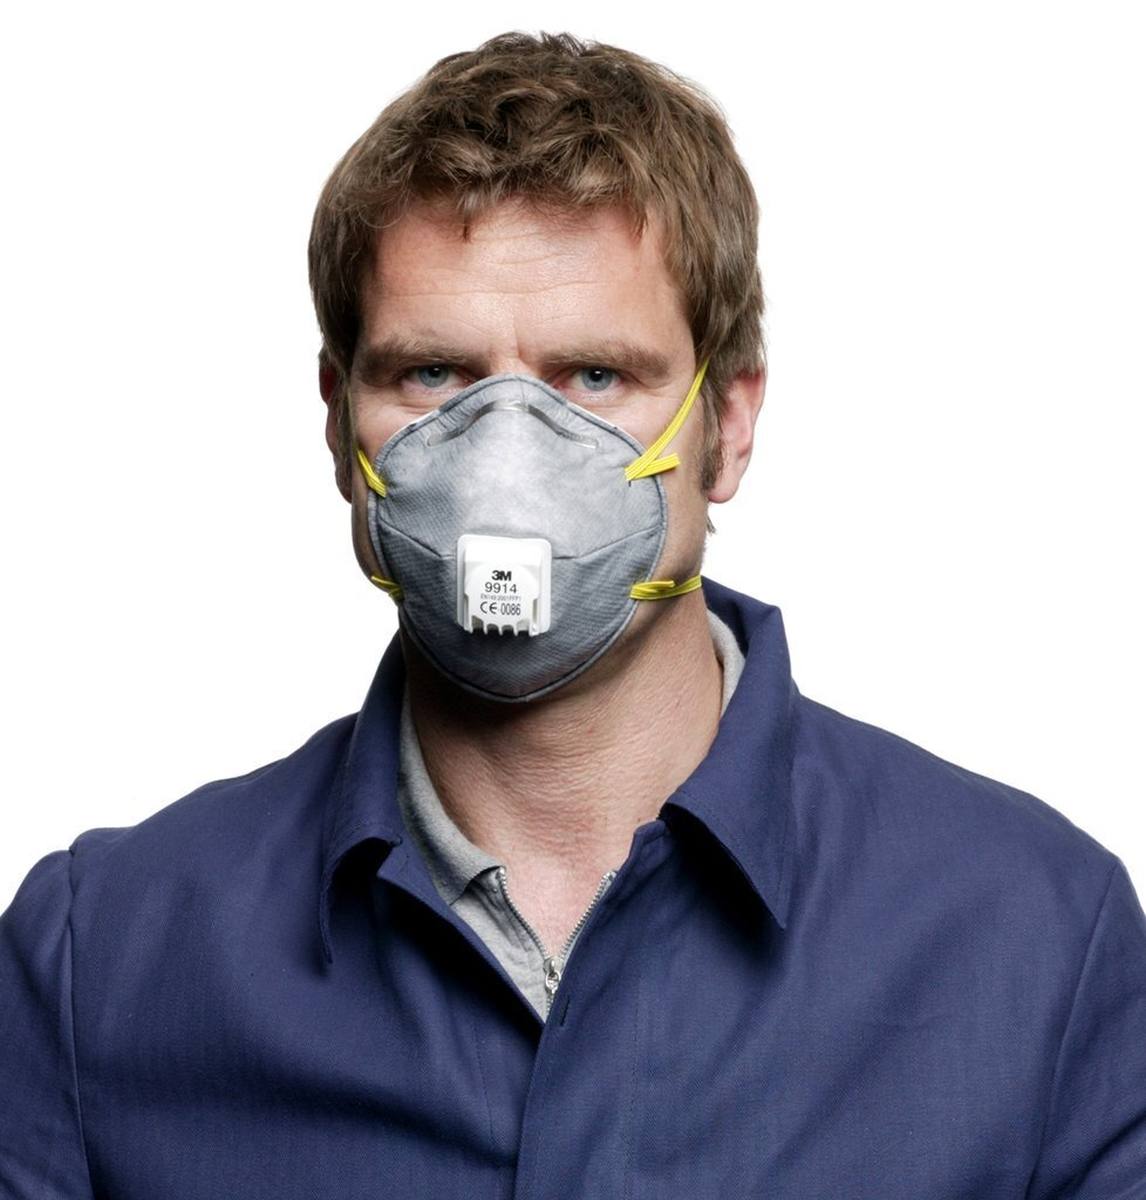 3M 9914 Masque anti-odeur FFP1 avec valve d'expiration Cool-Flow, jusqu'à 4 fois la valeur limite et contre les odeurs organiques inférieures à la valeur limite